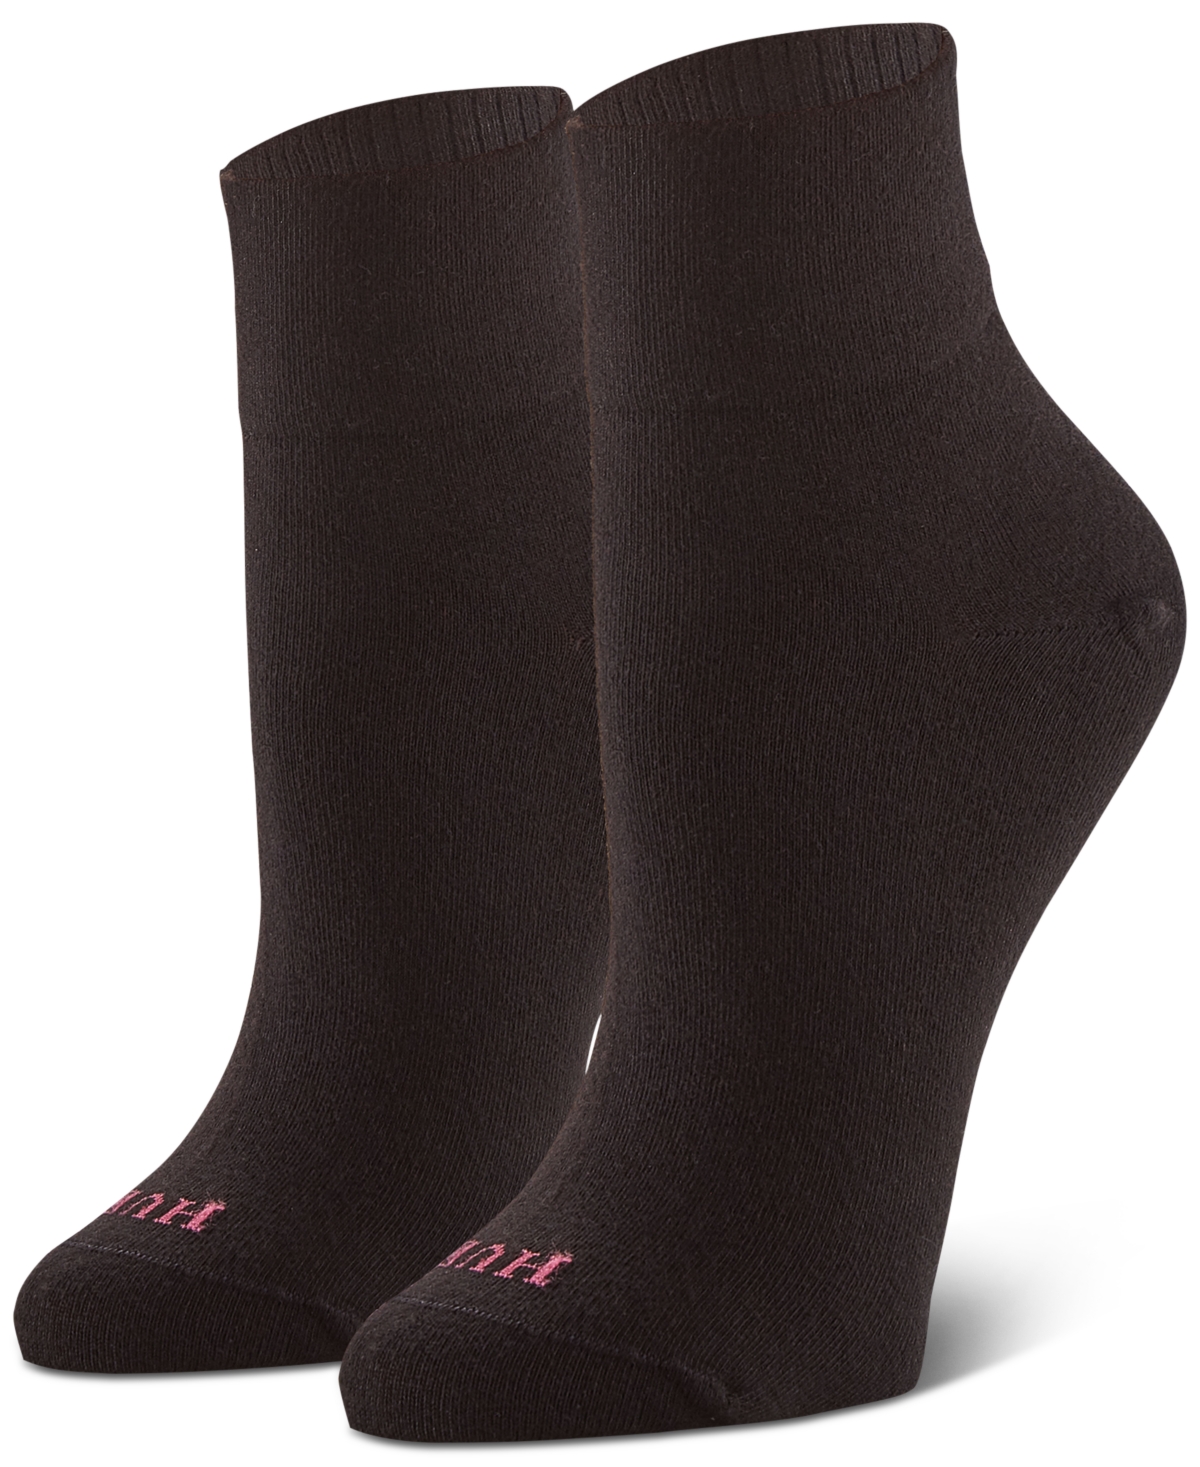 Hue Women's 3-Pk. Body Ankle Socks